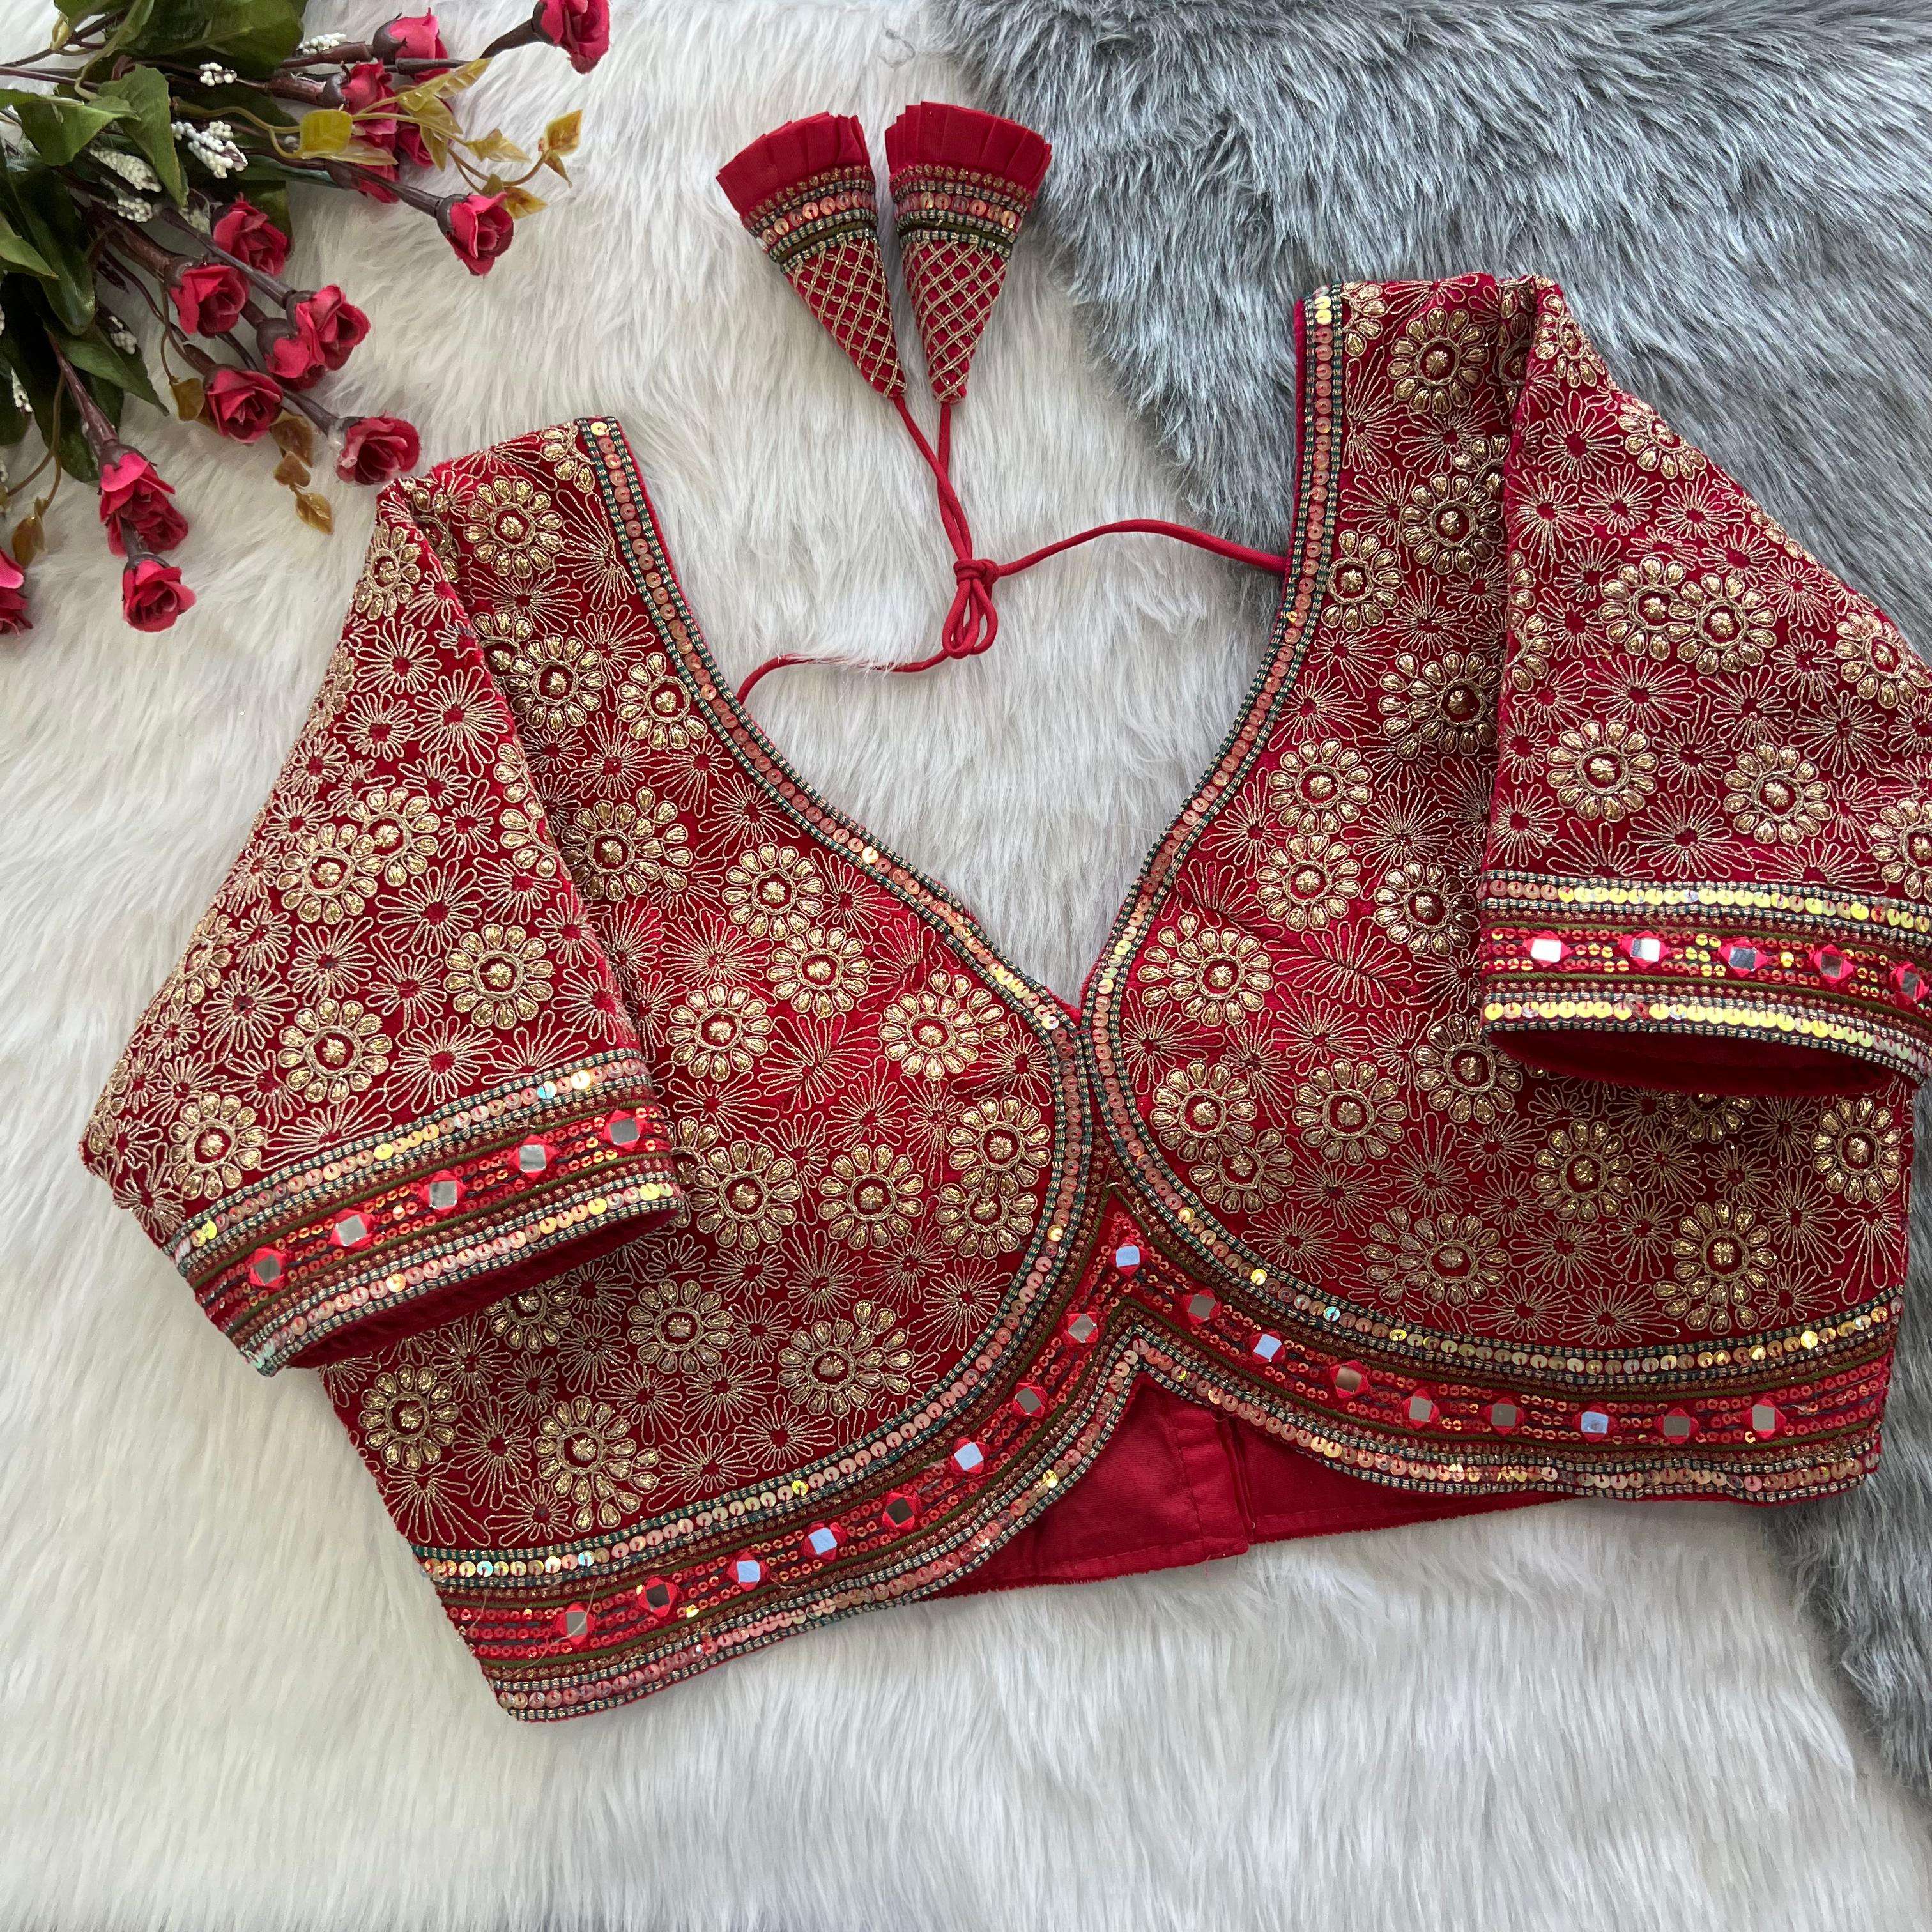 Lycra Cotton Lace Ladies Bra Panty Set at Rs 350/set in Surat